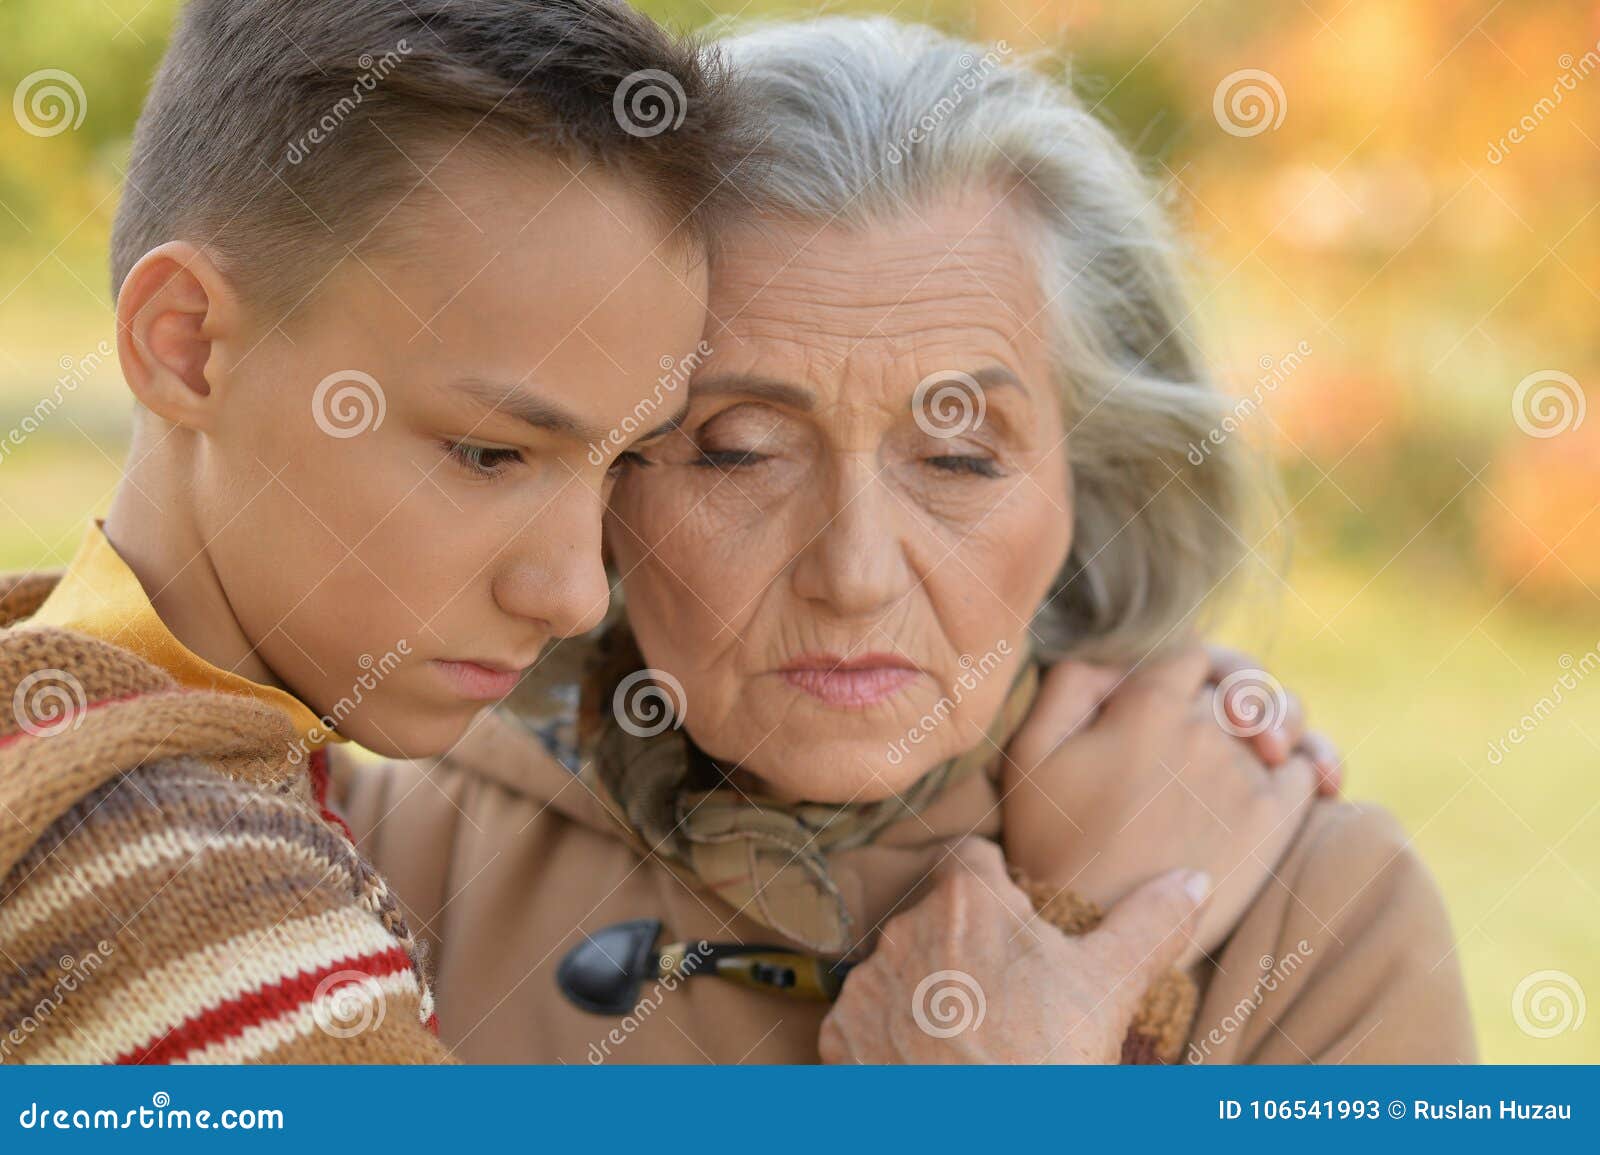 порно детей с бабушками (120) фото